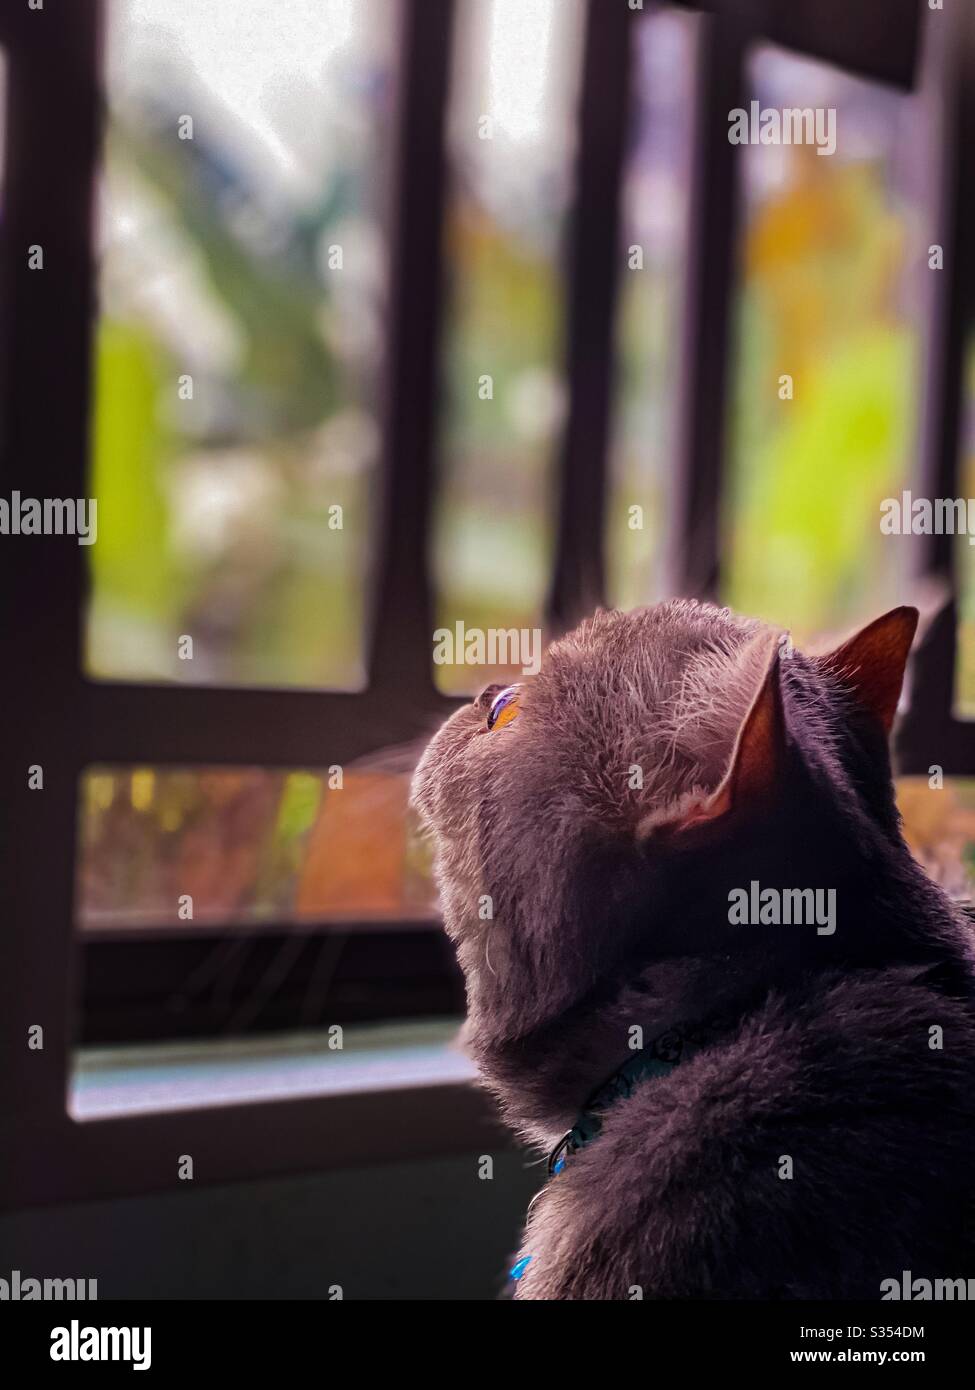 British capelli corti gatto sognante accanto alla finestra Foto Stock